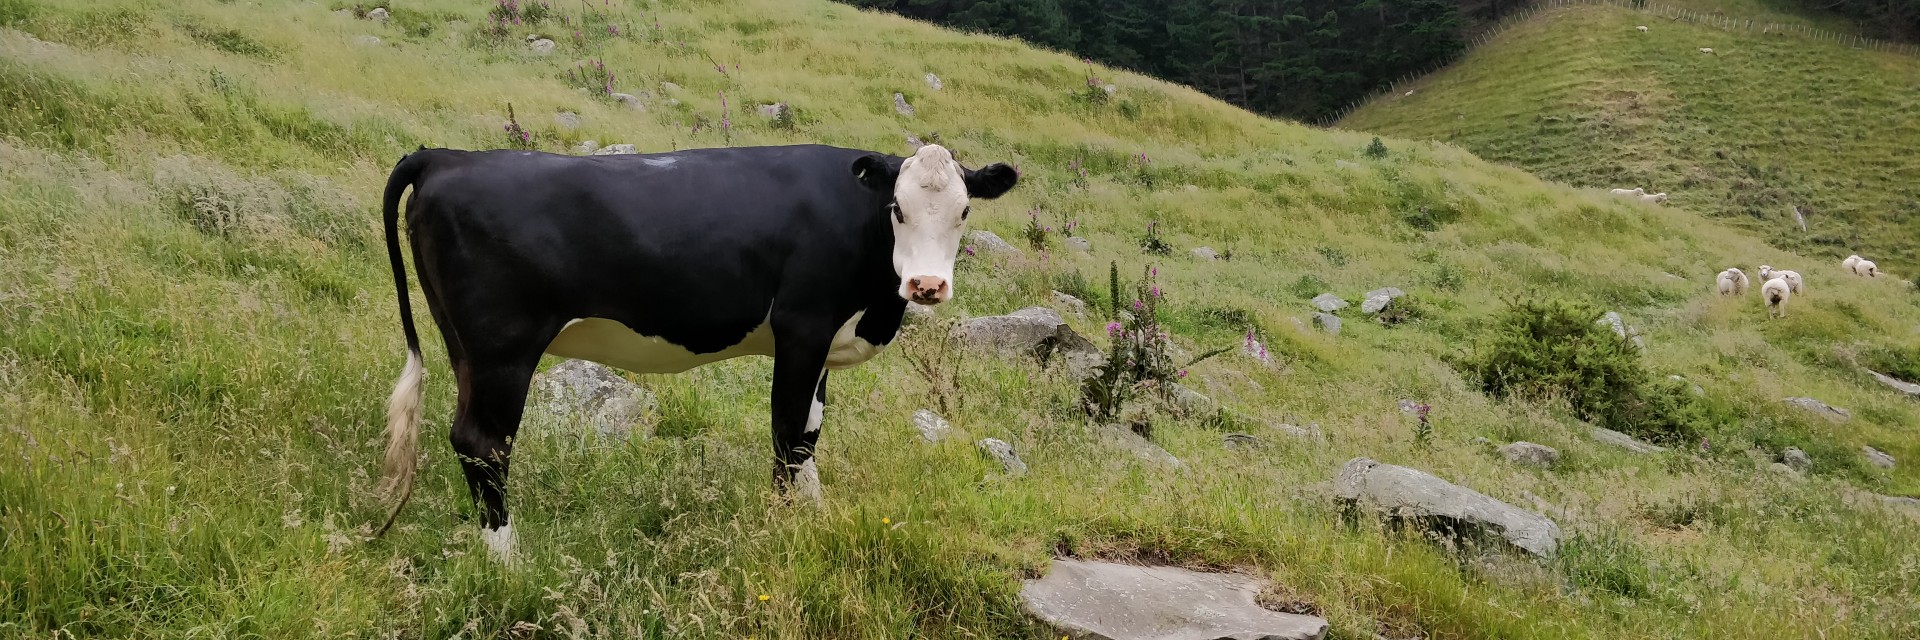 Cow at Whareroa Farm